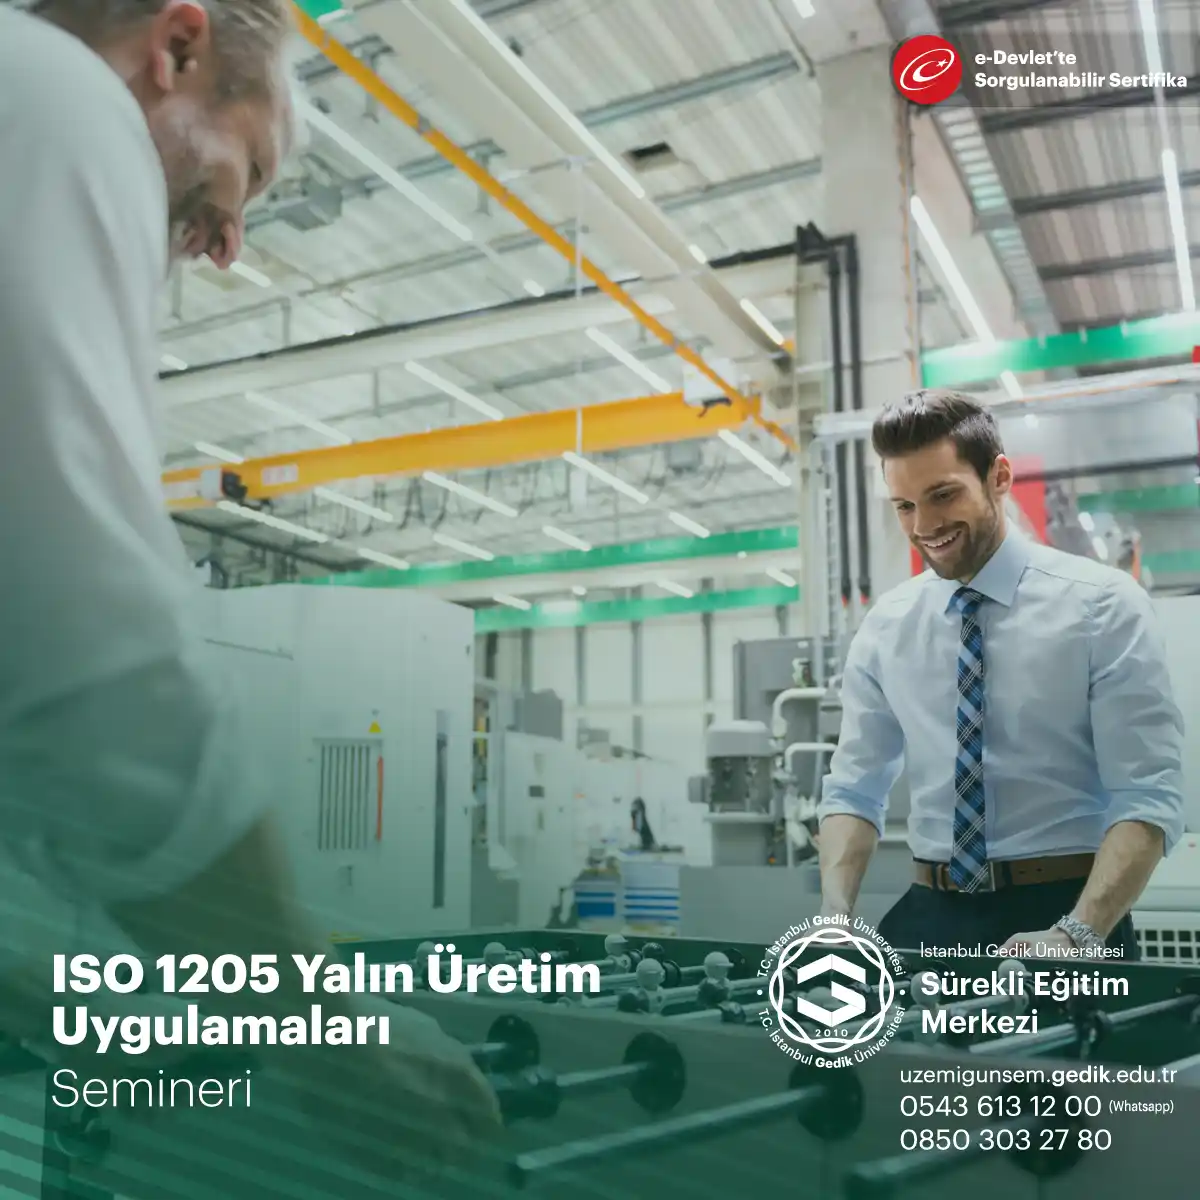 İşletmelerin üretim süreçlerini optimize etmek ve israfı azaltmak için ISO 1205 standardının yalın üretim yaklaşımlarıyla nasıl entegre edileceği anlatılır.